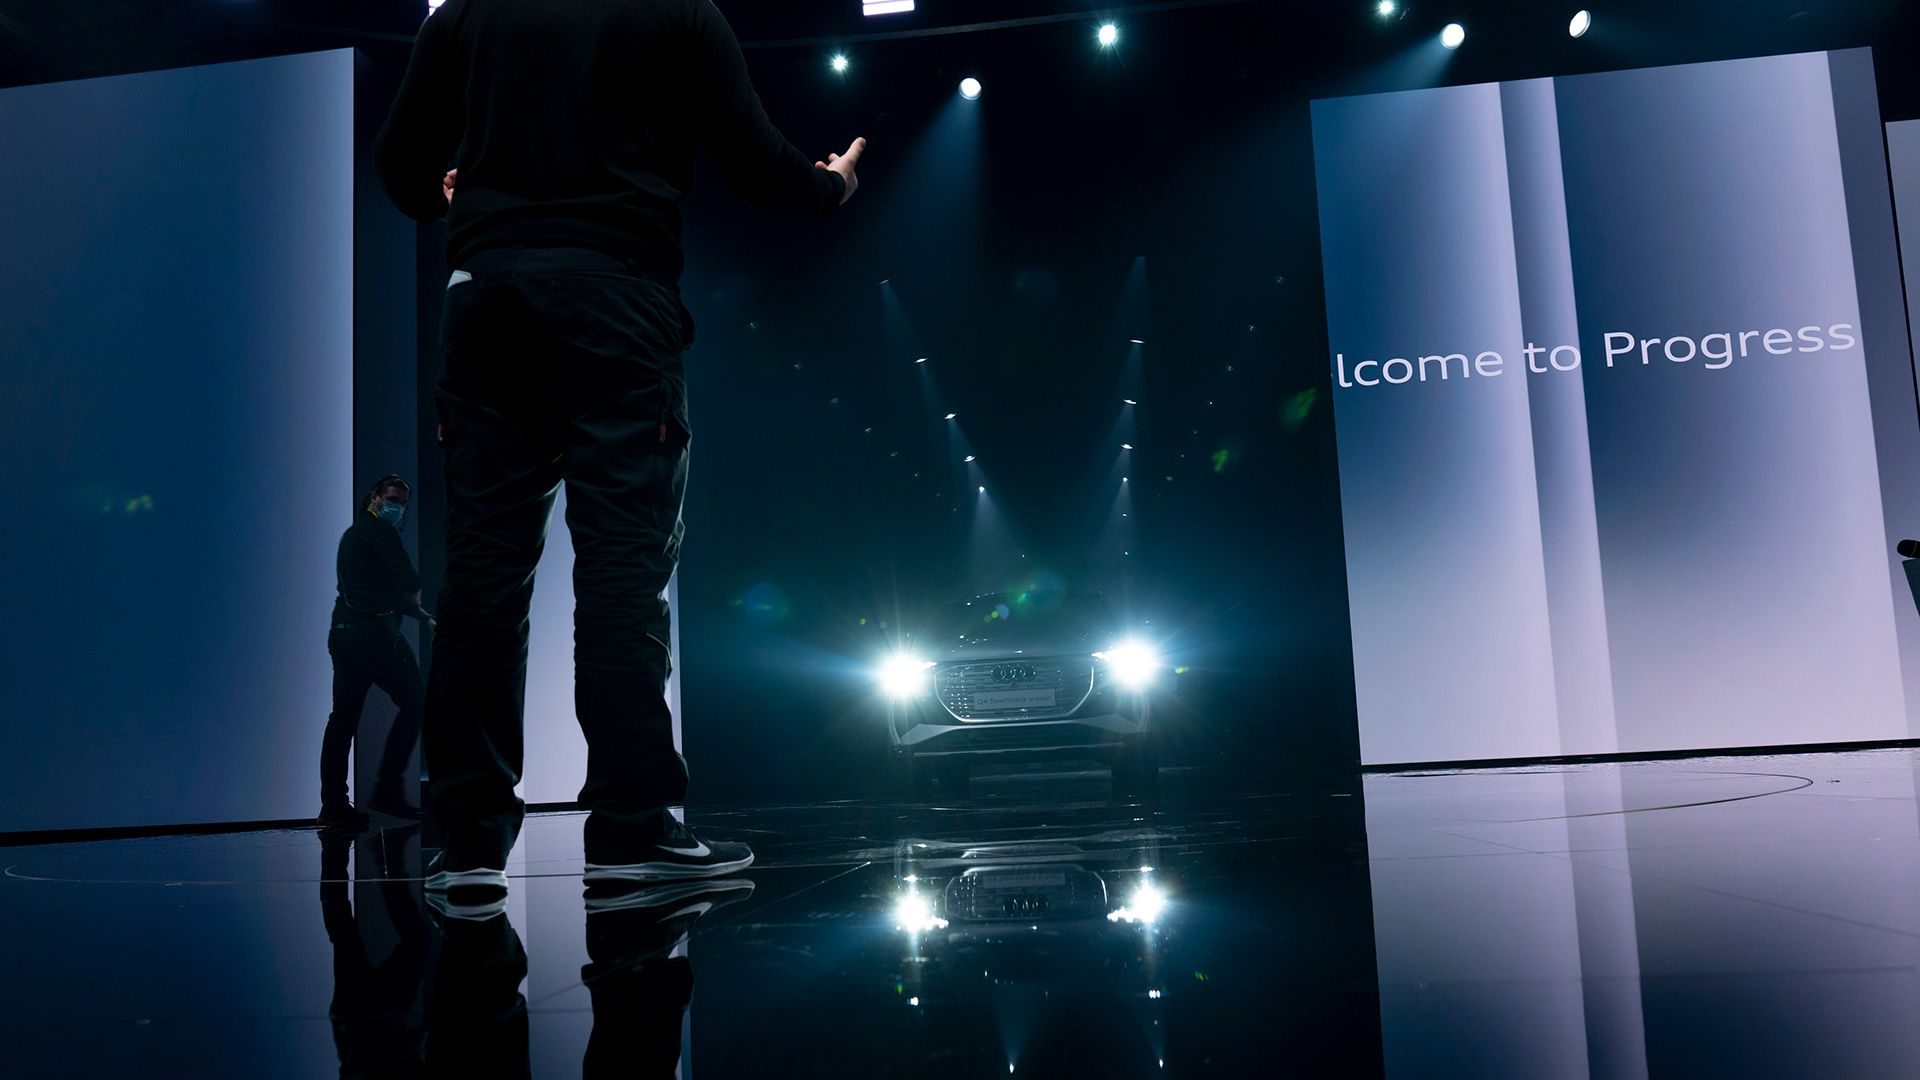 El Audi Q4 e-tron sale al escenario con los faros encendidos. A la derecha hay una pantalla en la que se lee "Welcome to Progress".